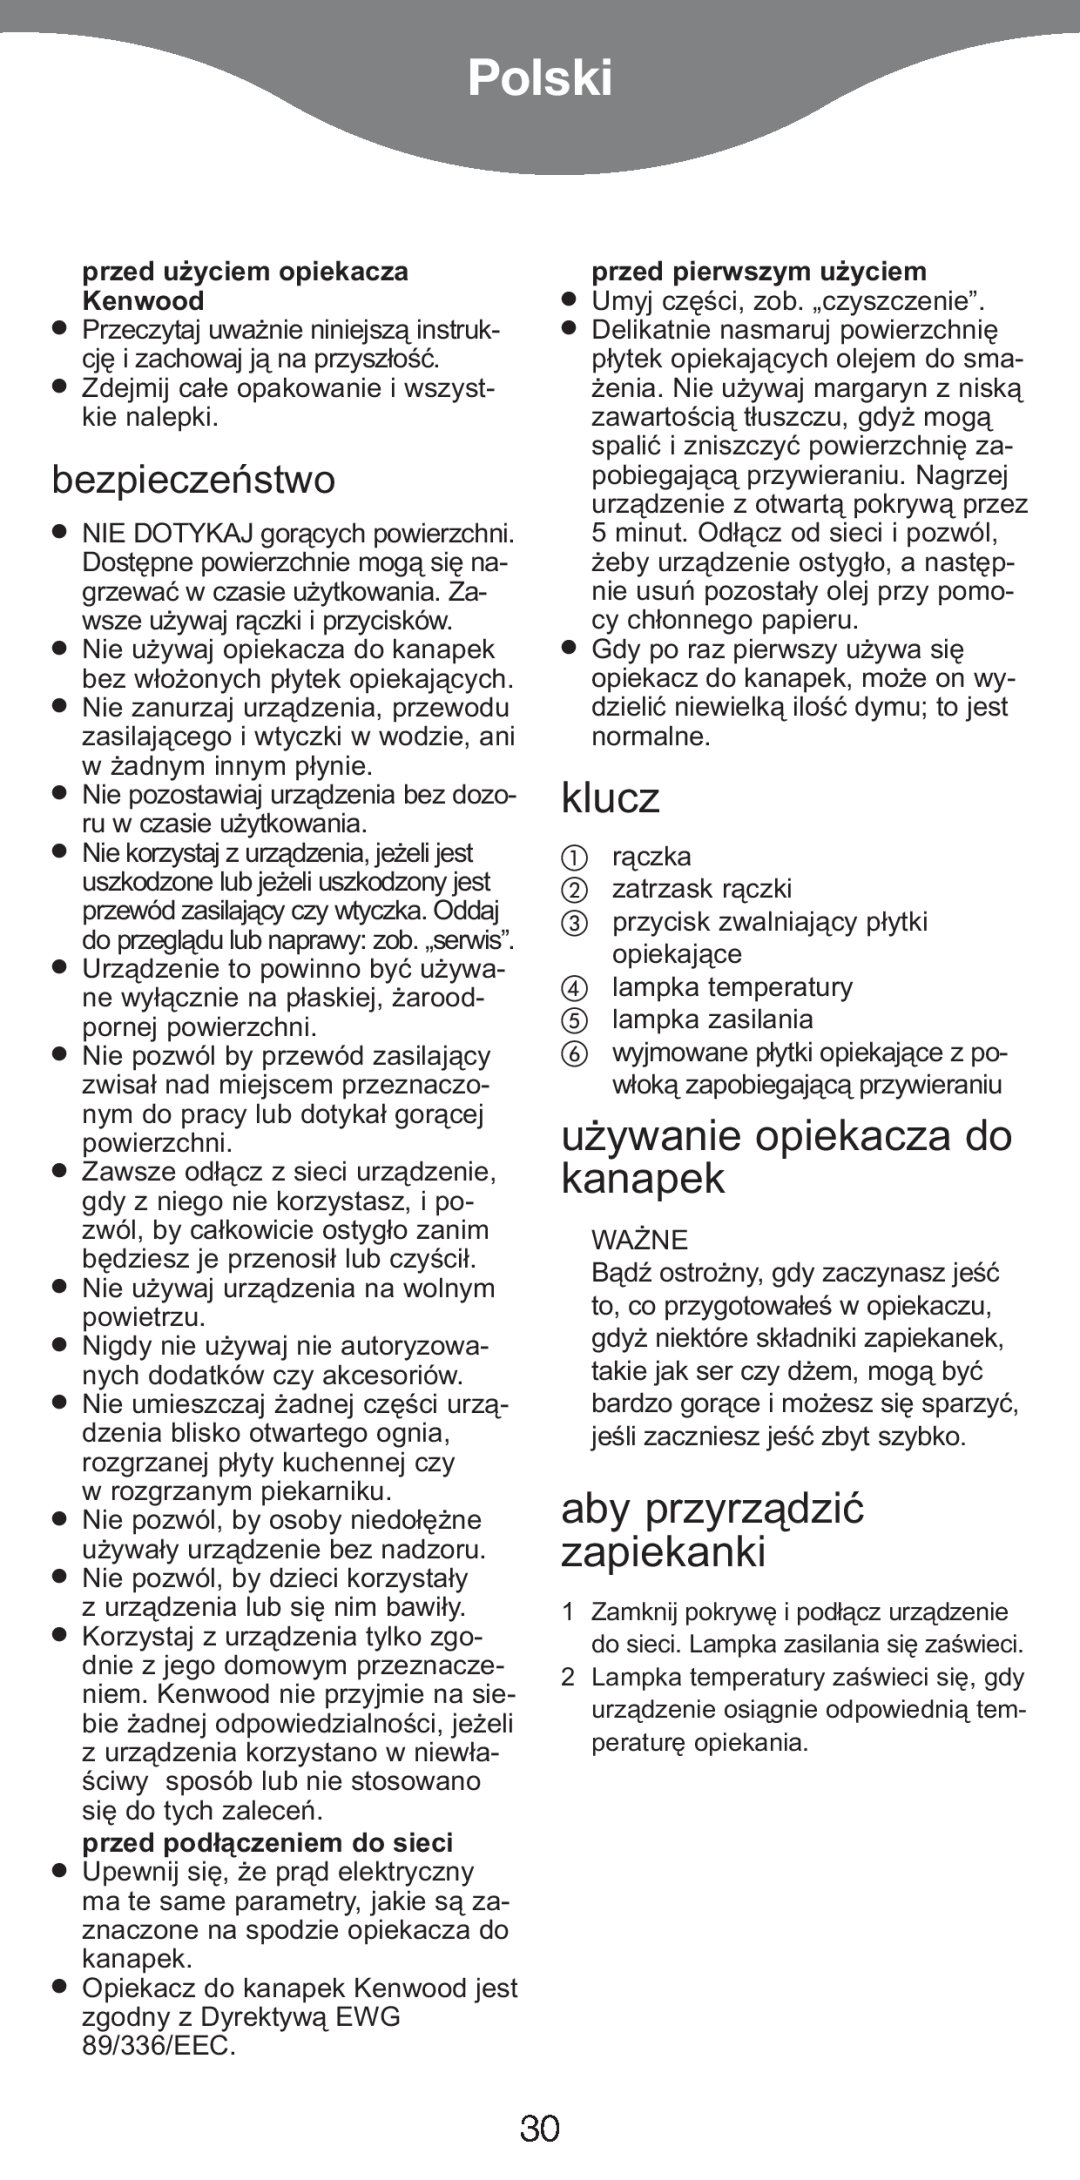 Kenwood SM420 manual Polski, klucz, używanie opiekacza do kanapek, aby przyrządzić zapiekanki, bezpieczeństwo 